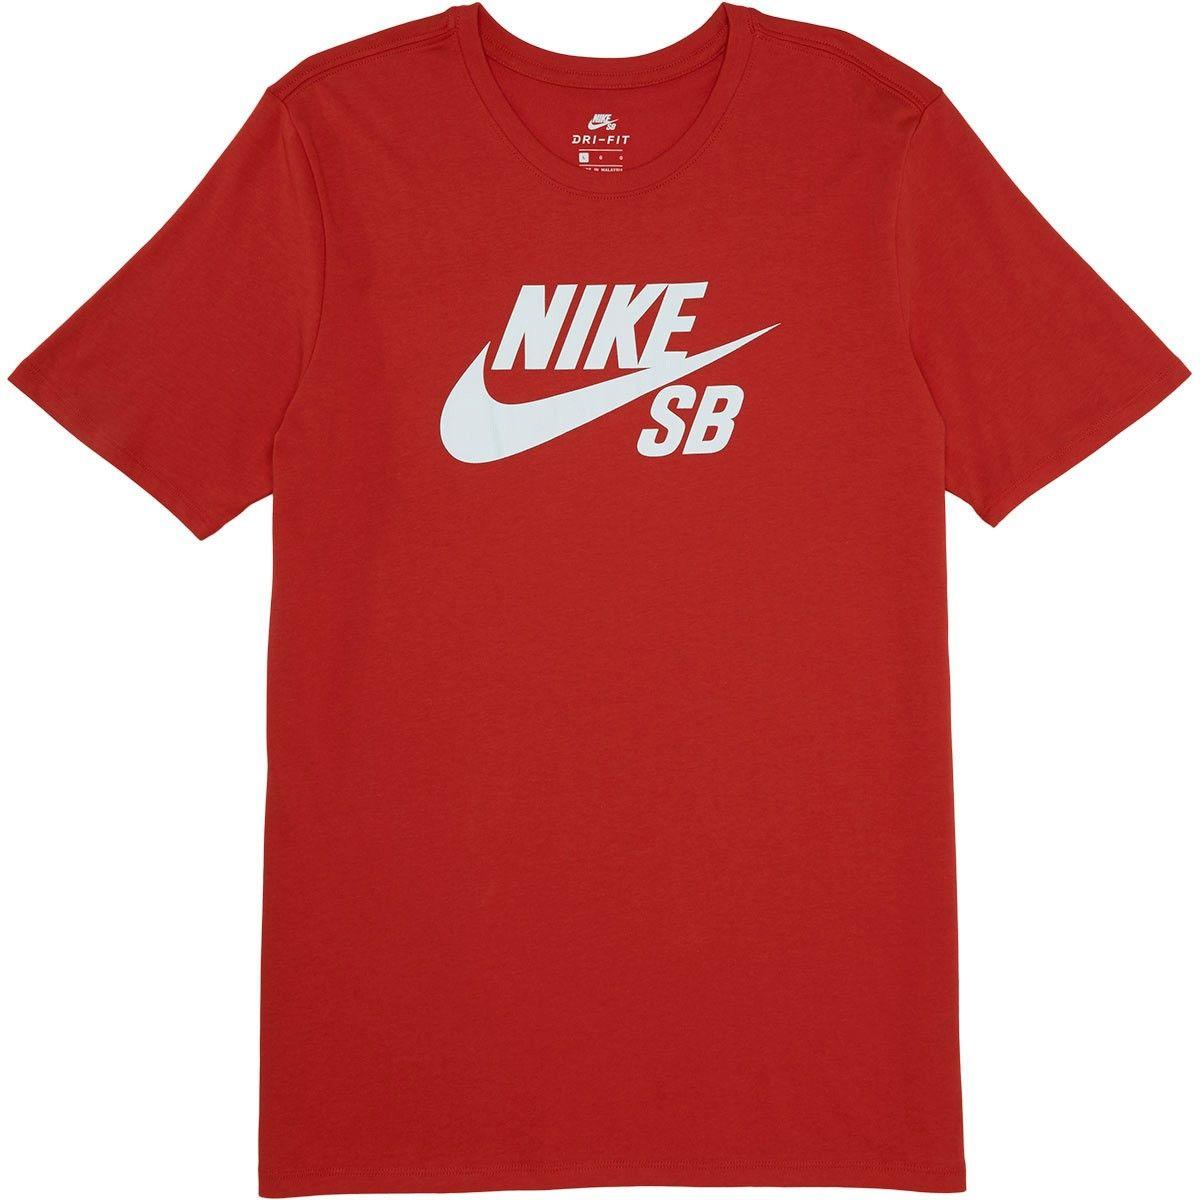 Red Nike SB Logo - Nike SB Logo T-Shirt - University Red/White